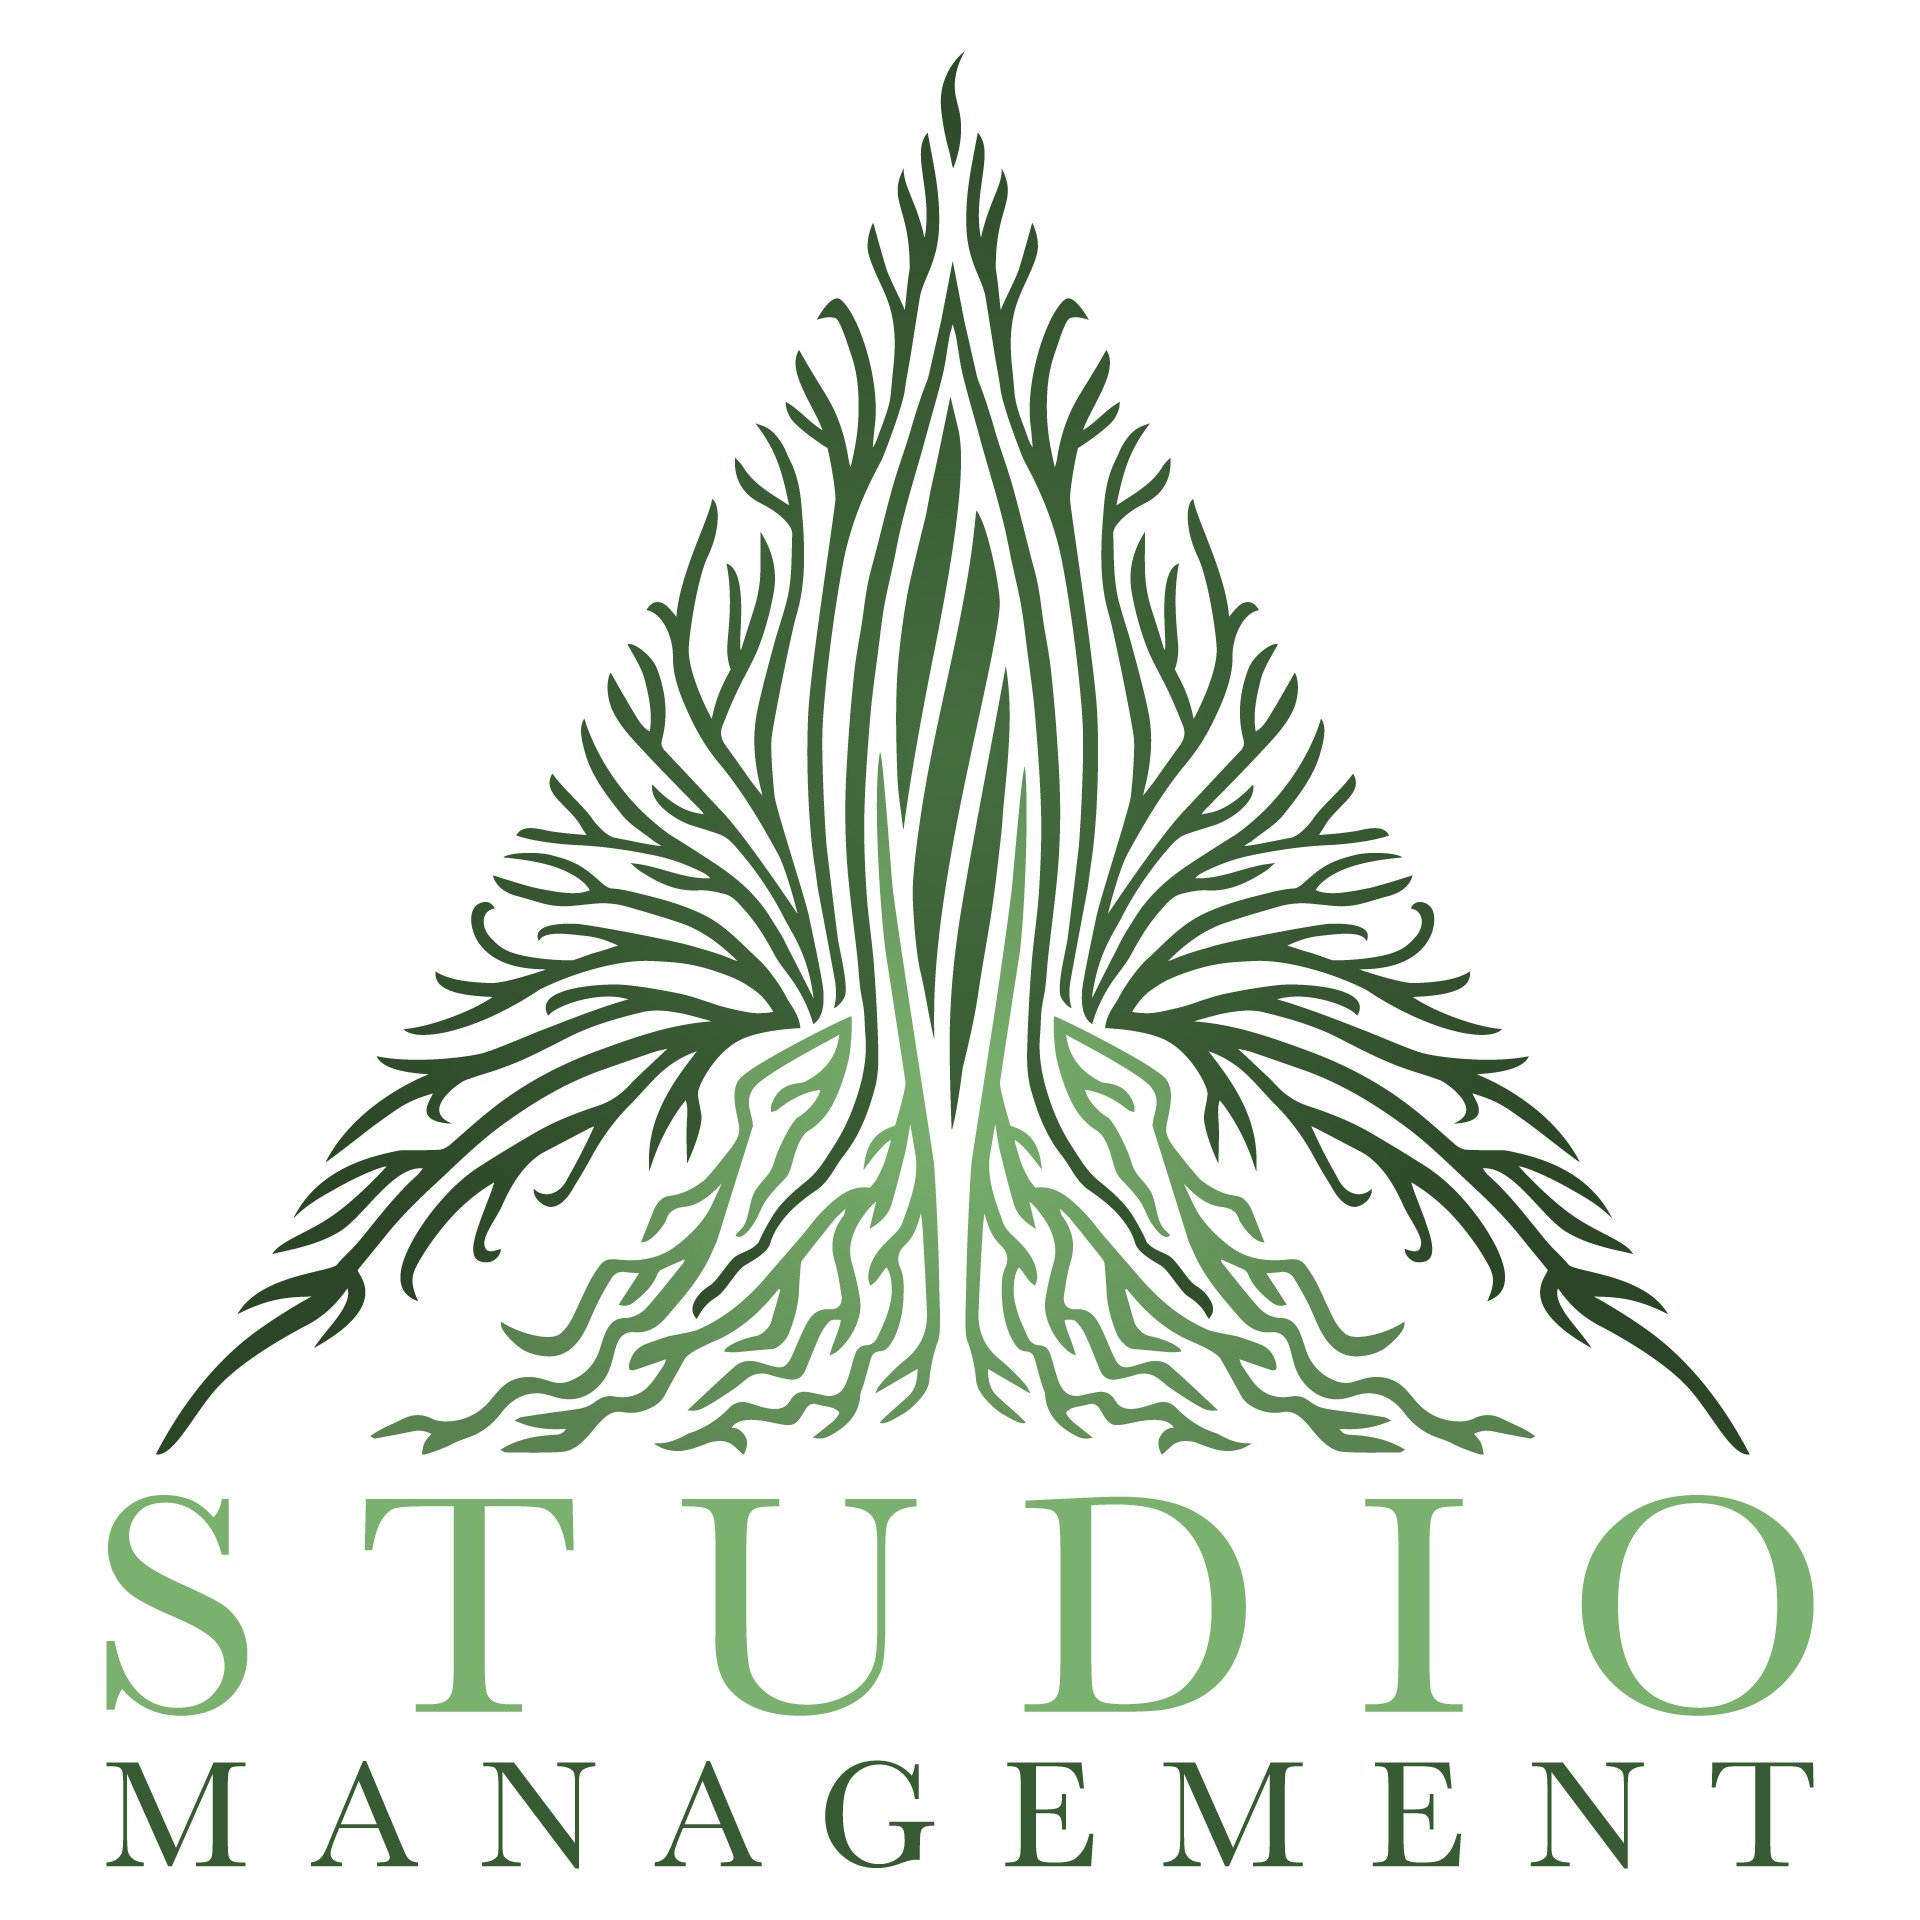 Studio Management